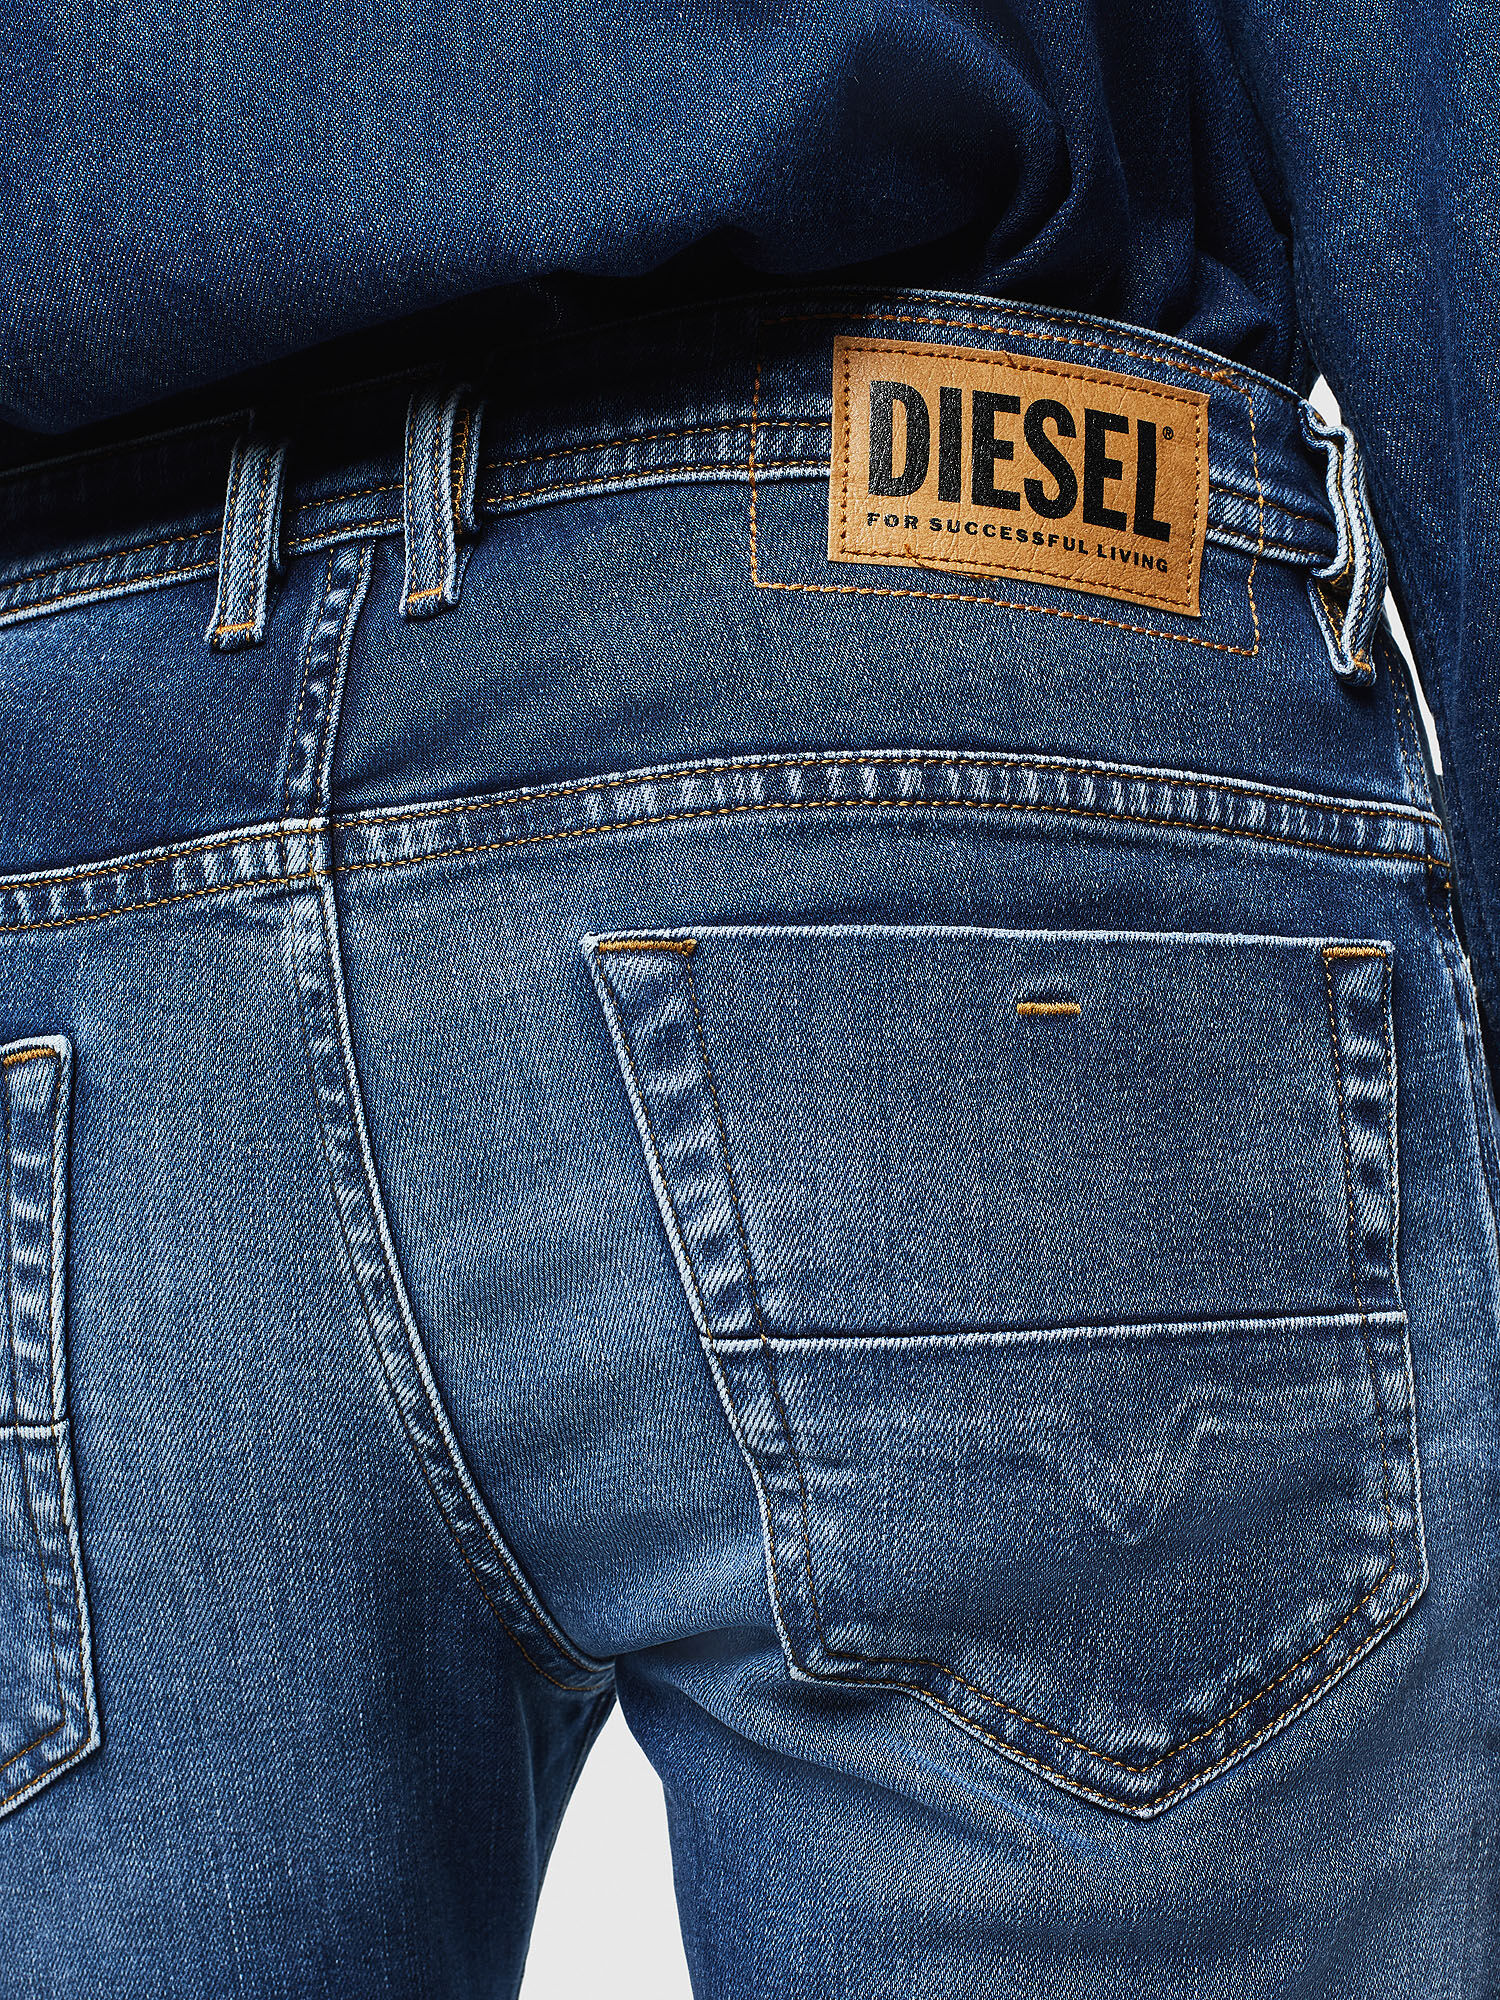 diesel jeans pocket designs